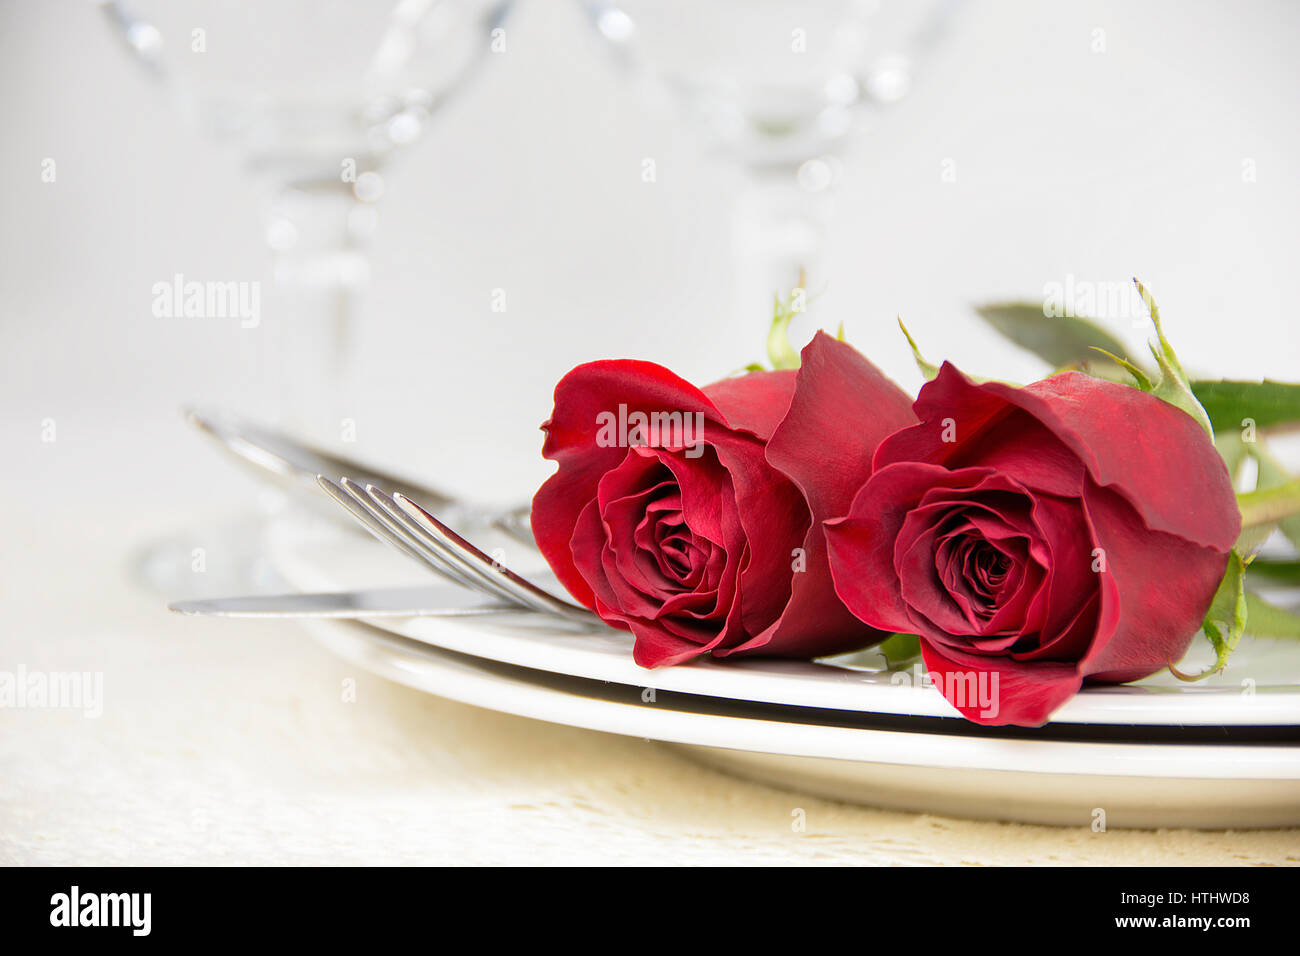 Roses rouges sur l'assiette avec l'argenterie Banque D'Images